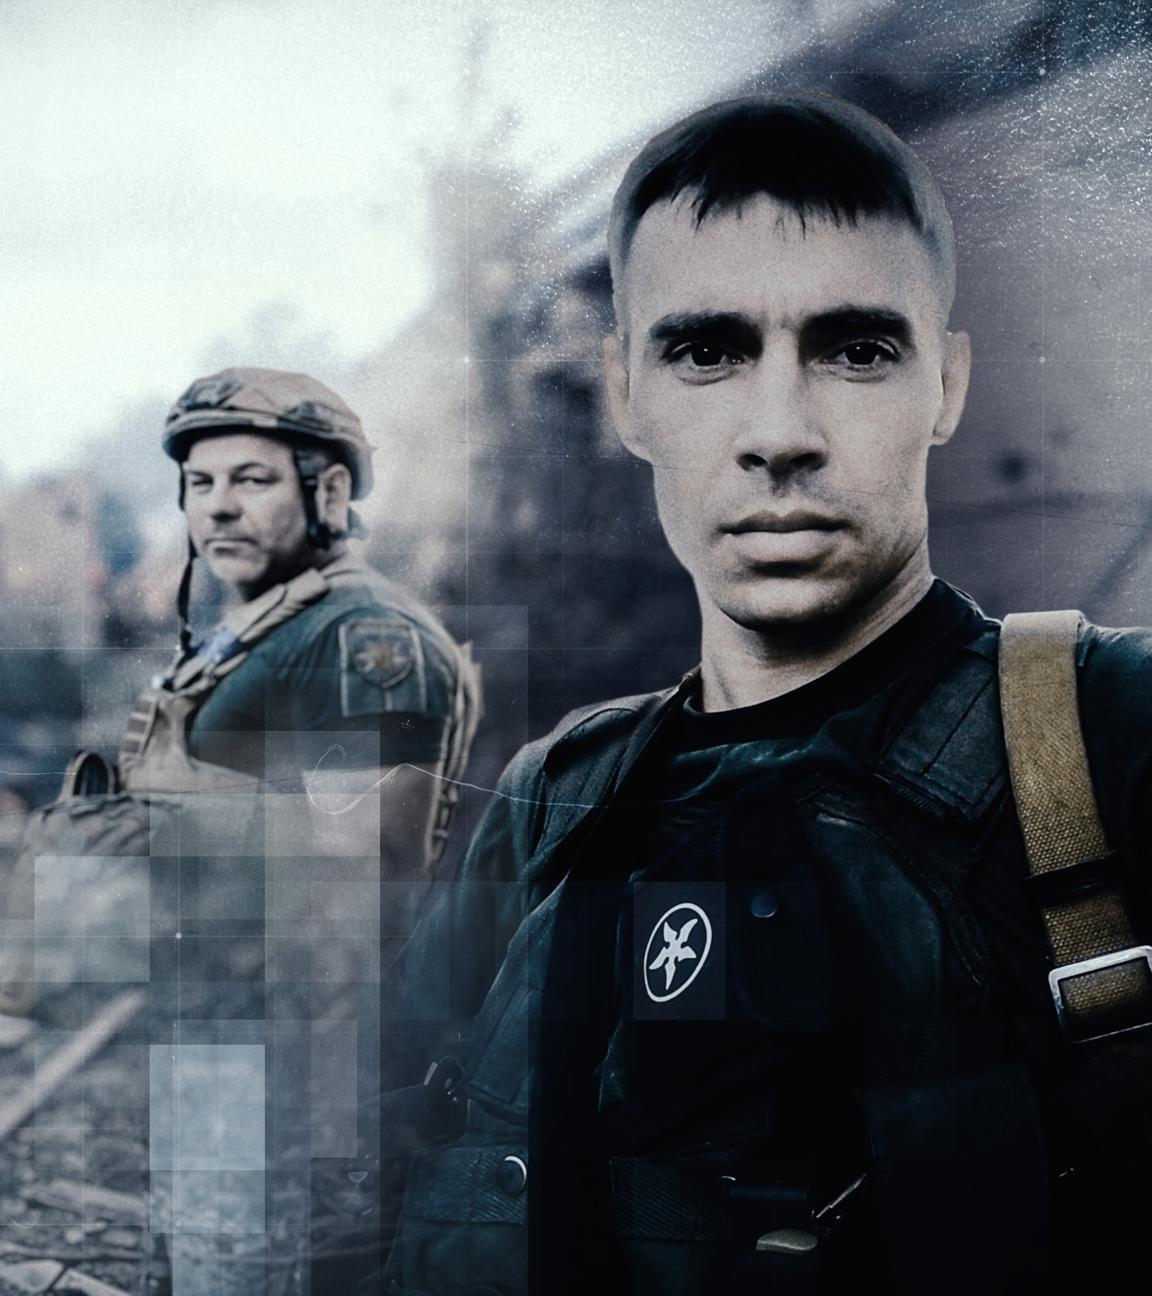 Collage: Ukrainischer Polizist Vasyl Pipa und Kollege Rustam vor brennender Hausruine im Hintergrund